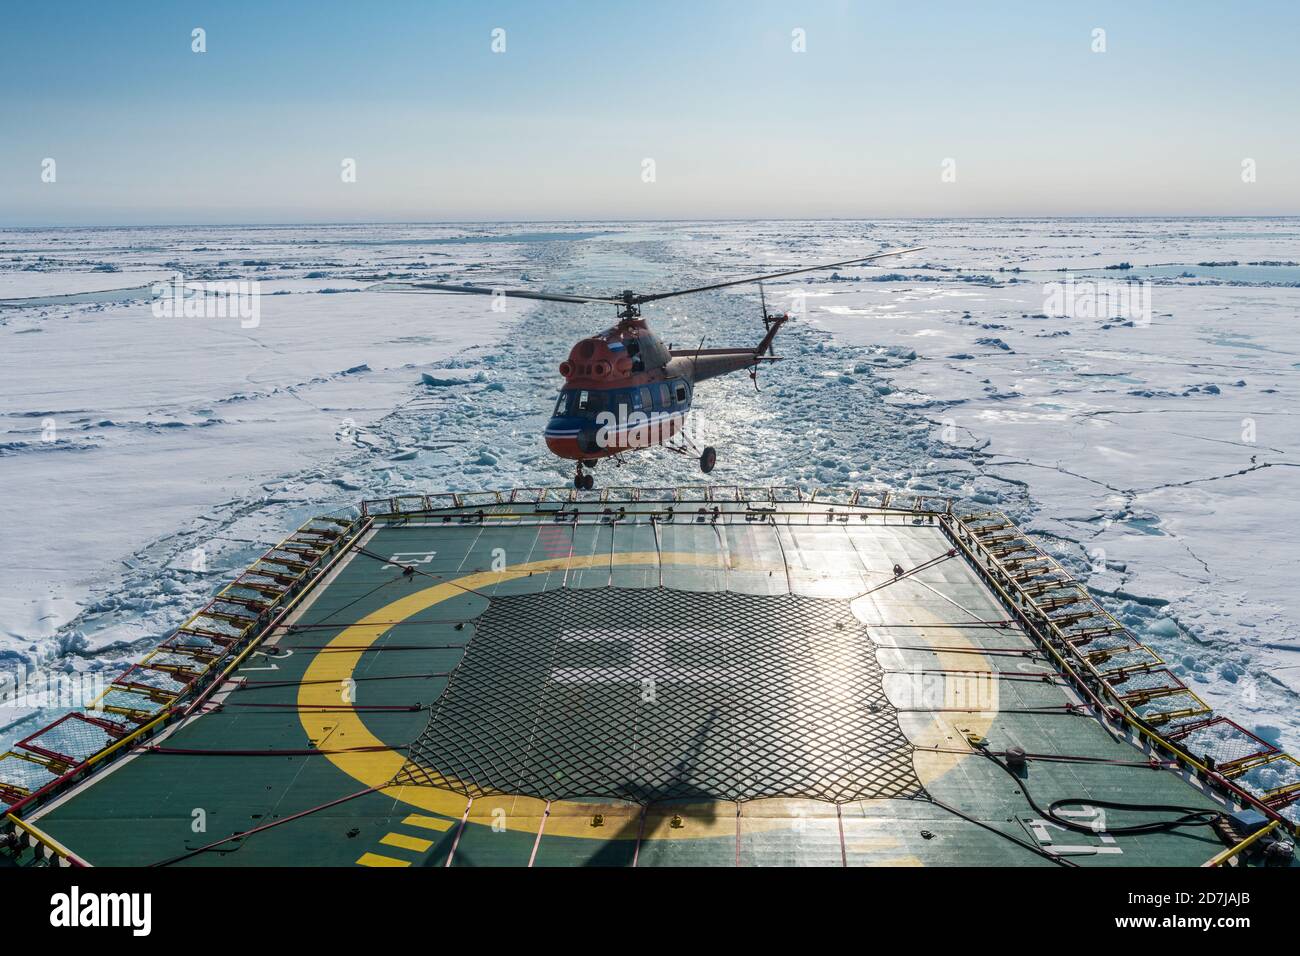 Atterrissage en hélicoptère sur héliport du brise-glace 50 ans de victoire nettoyage à travers la glace de l'océan Arctique Banque D'Images